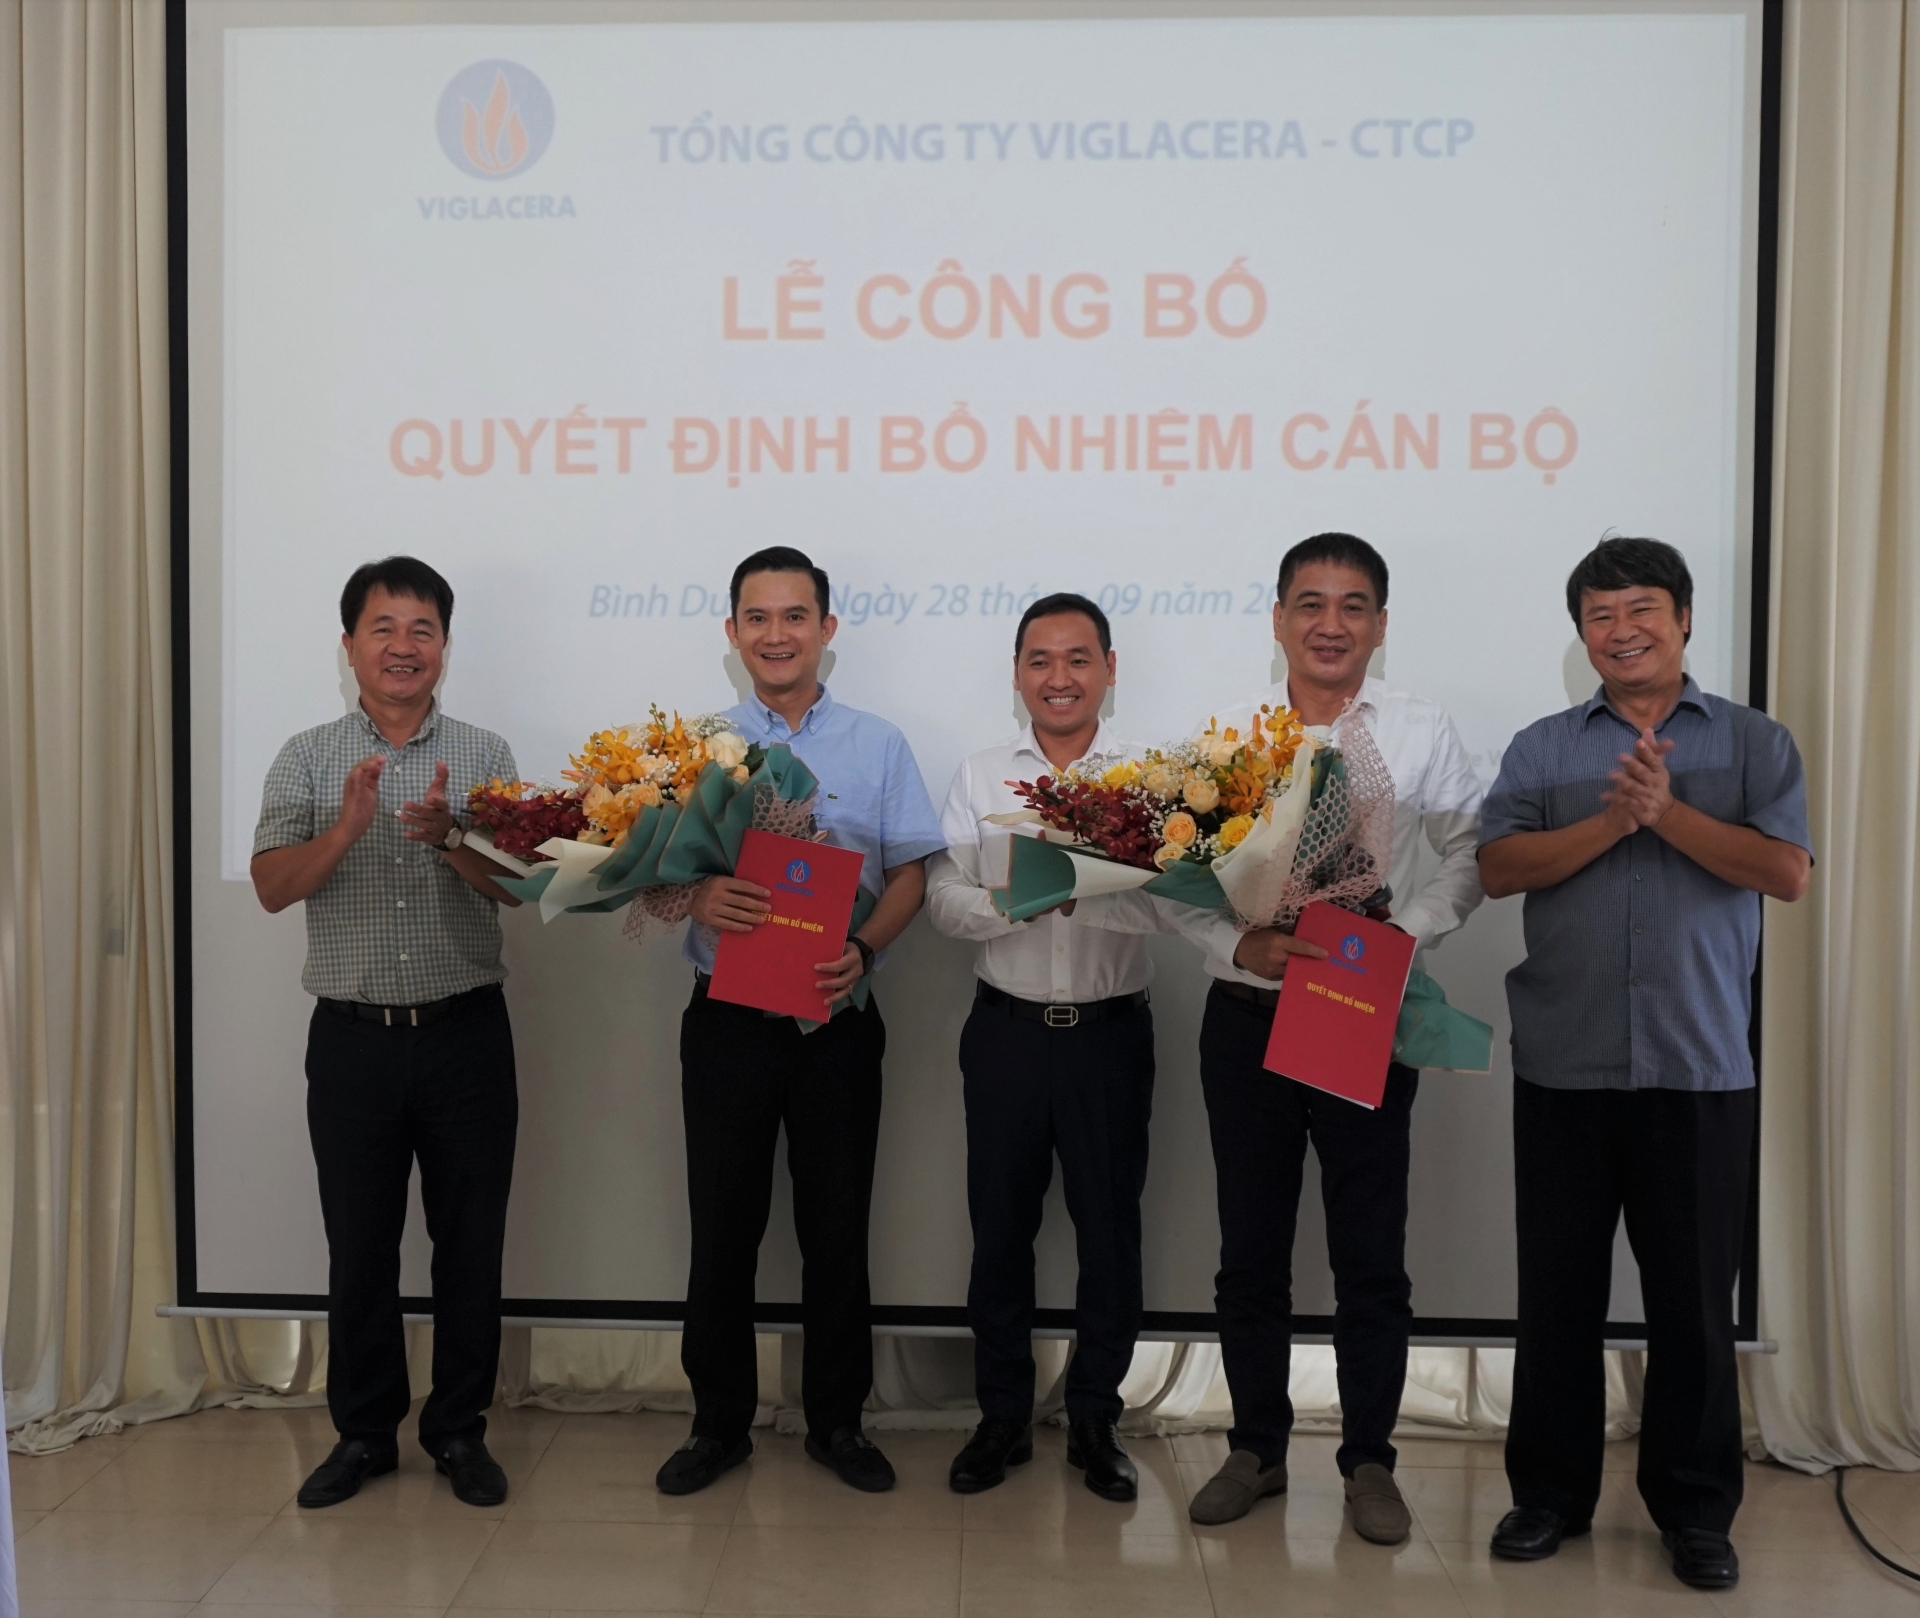 Tổng công ty Viglacera – CTCP bổ nhiệm hai tân Phó Tổng giám đốc Tổng công ty